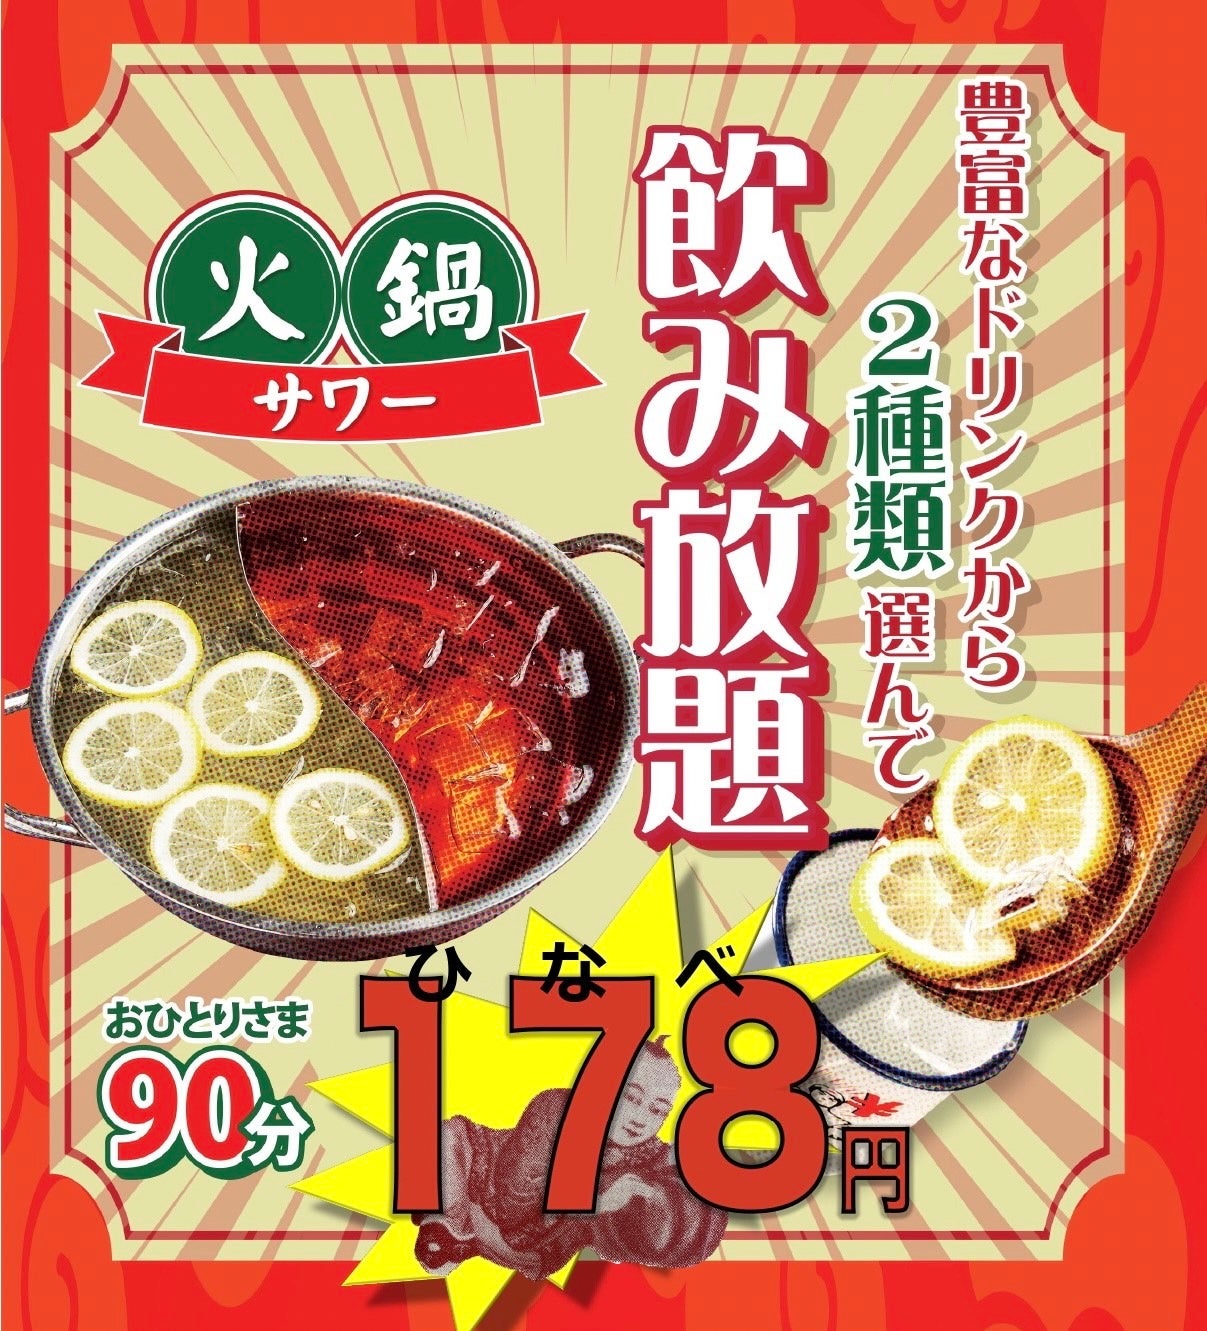 【そごう横浜店に登場】和栗のモンブラン大福の「末広庵」。苺大福や、和菓子屋さんのぷりんシリーズも。